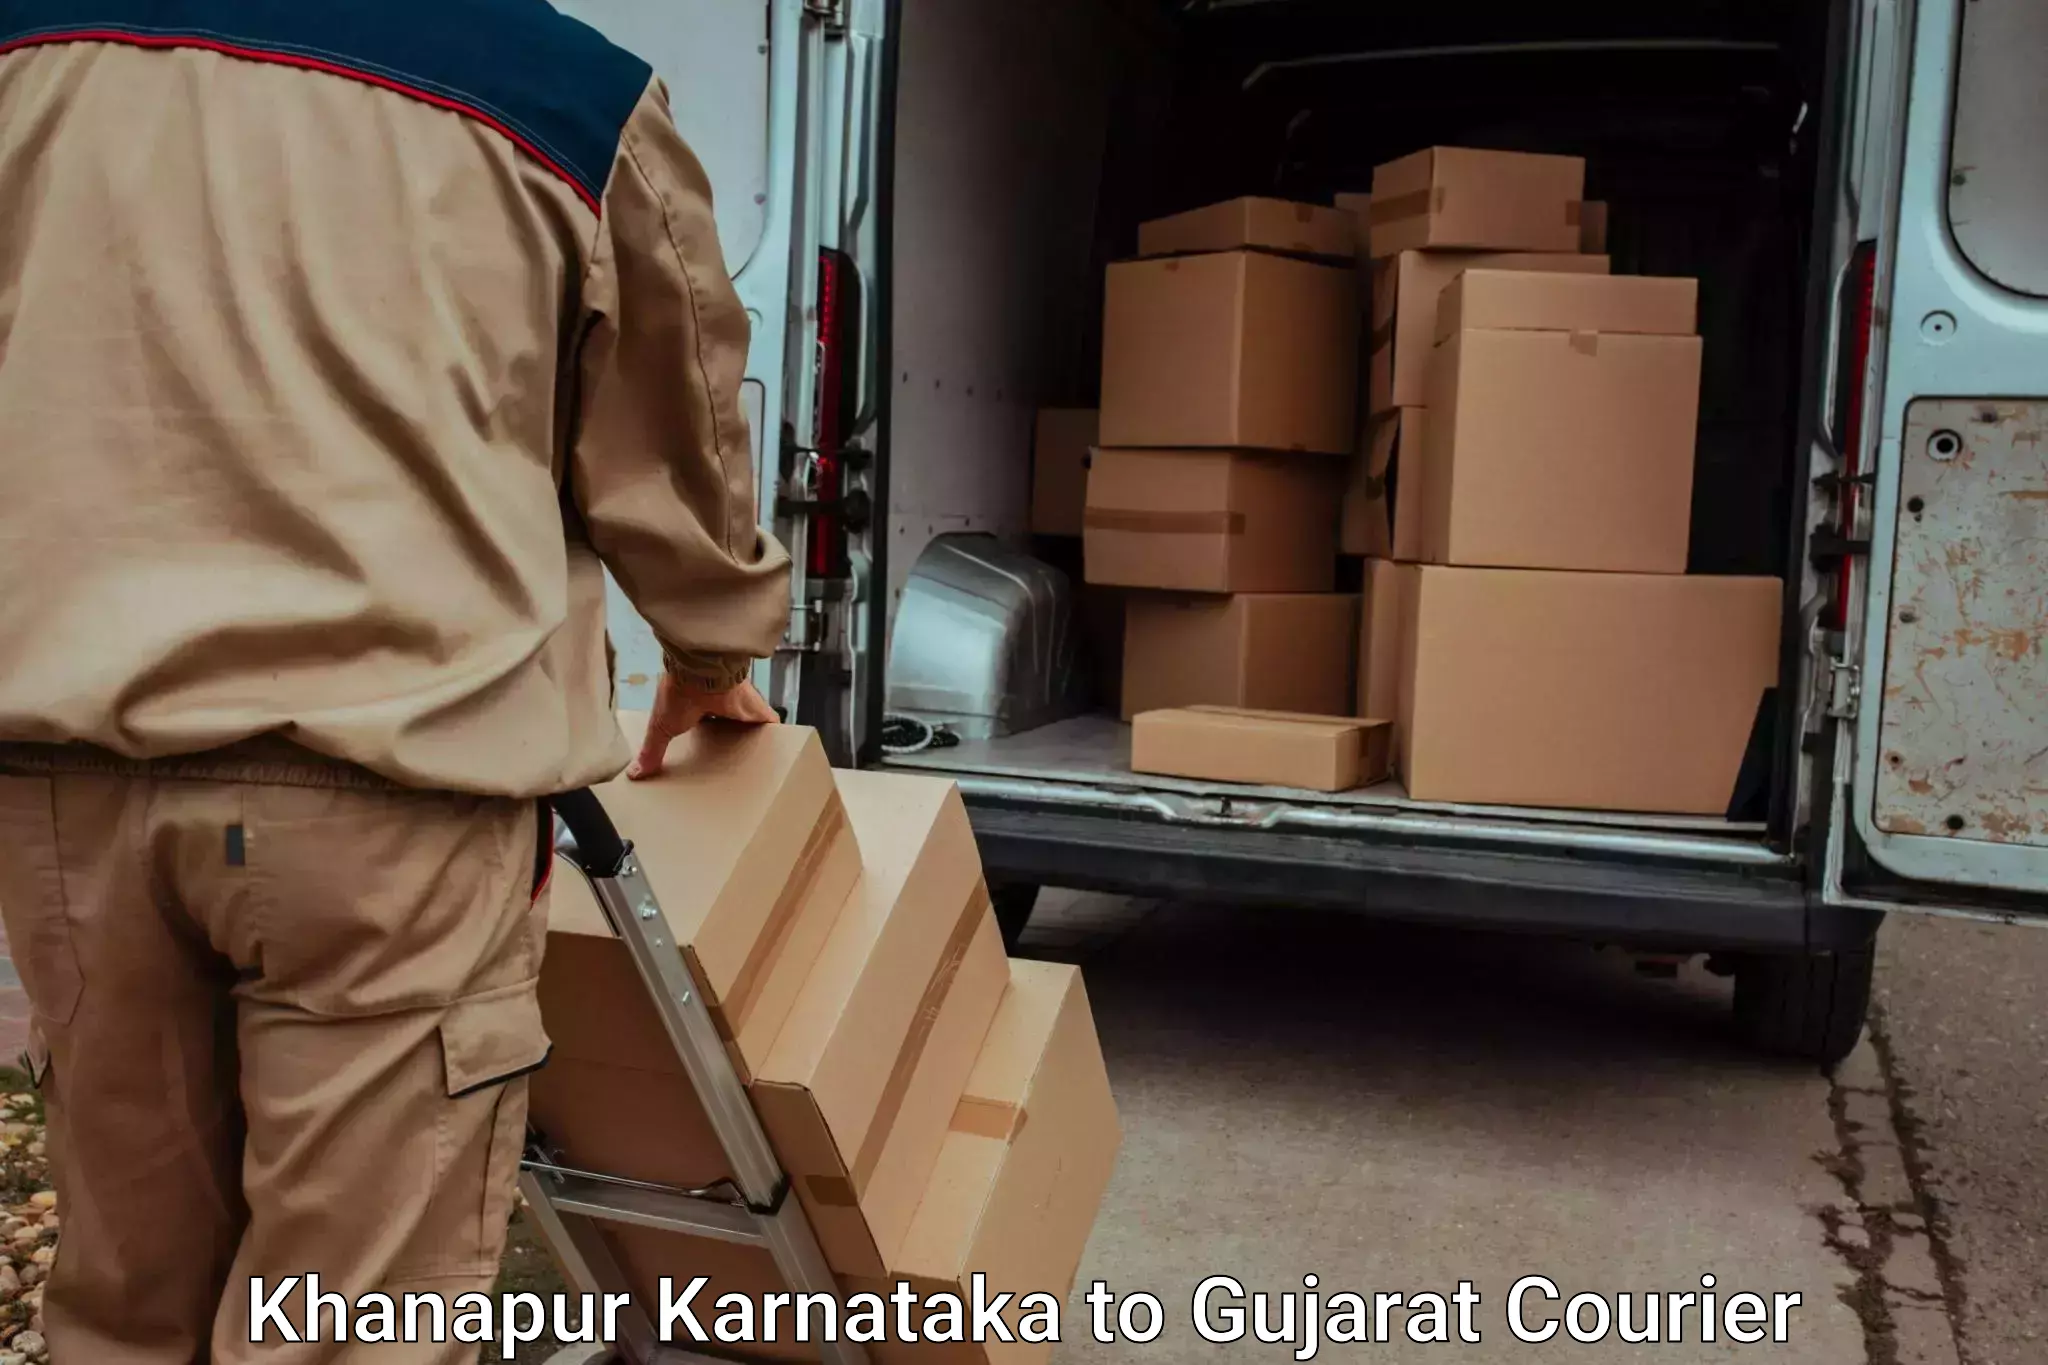 High-quality baggage shipment Khanapur Karnataka to Anand